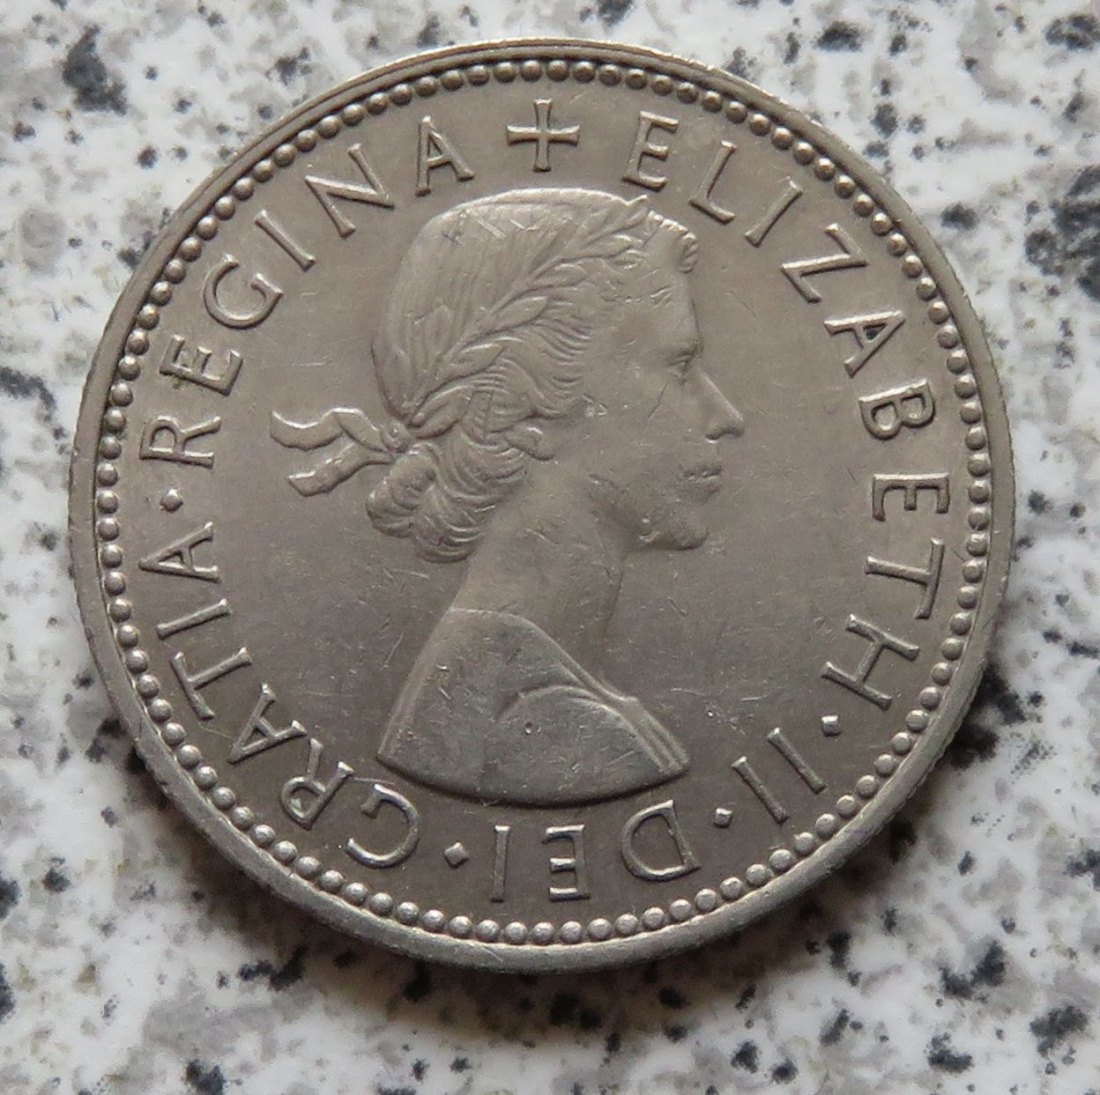  Großbritannien 1 Shilling 1963, Schottisch   